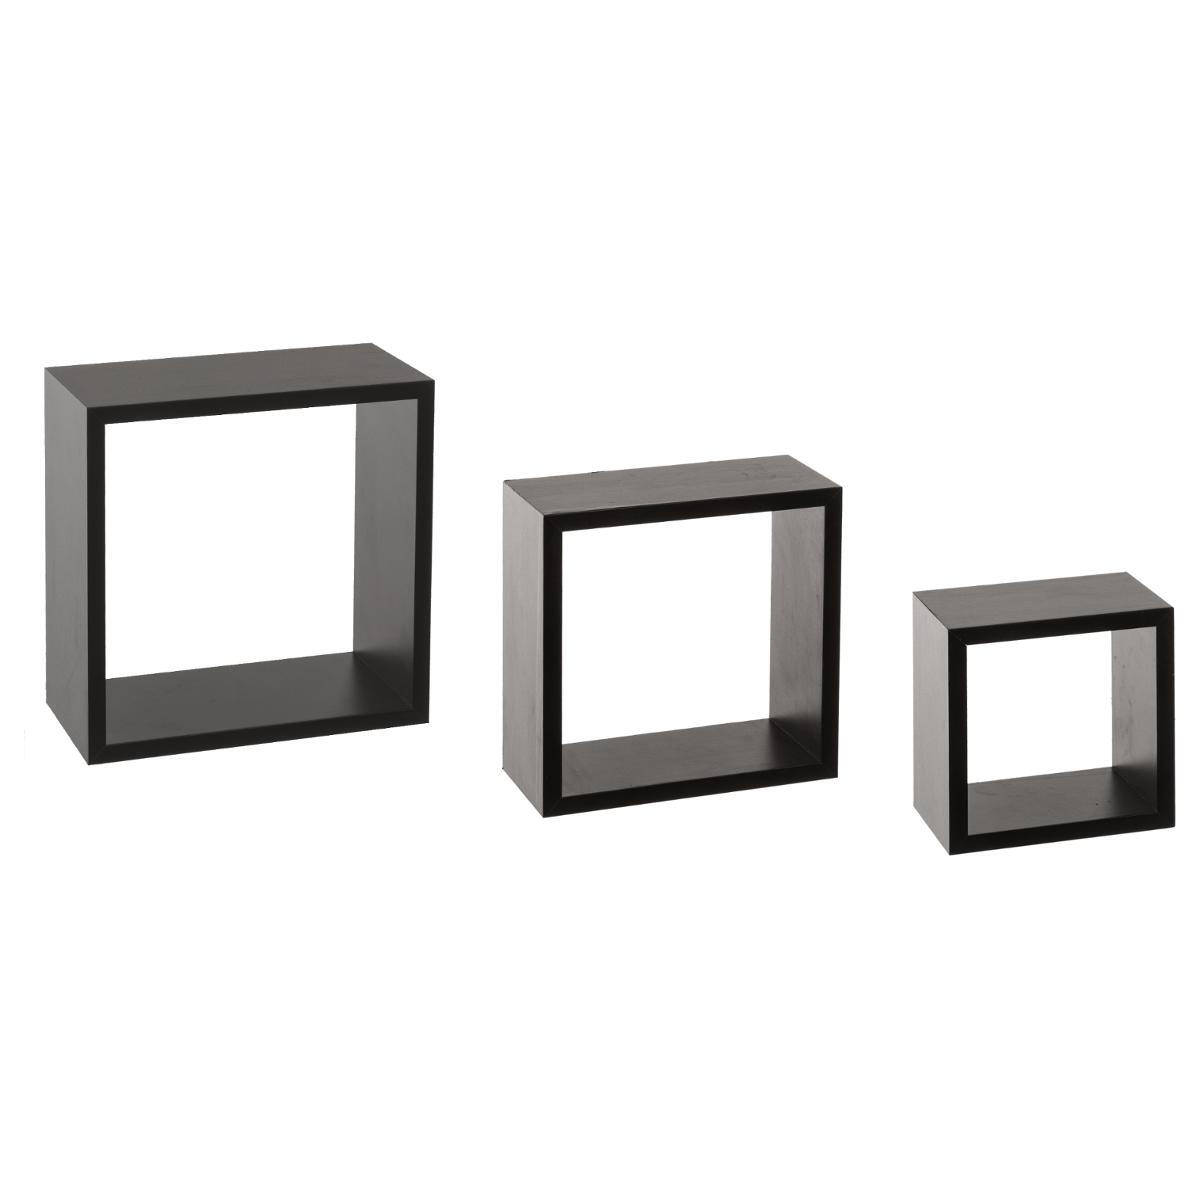 Lote de 3 estanterías Cubo Negro Modelo pequeño 1